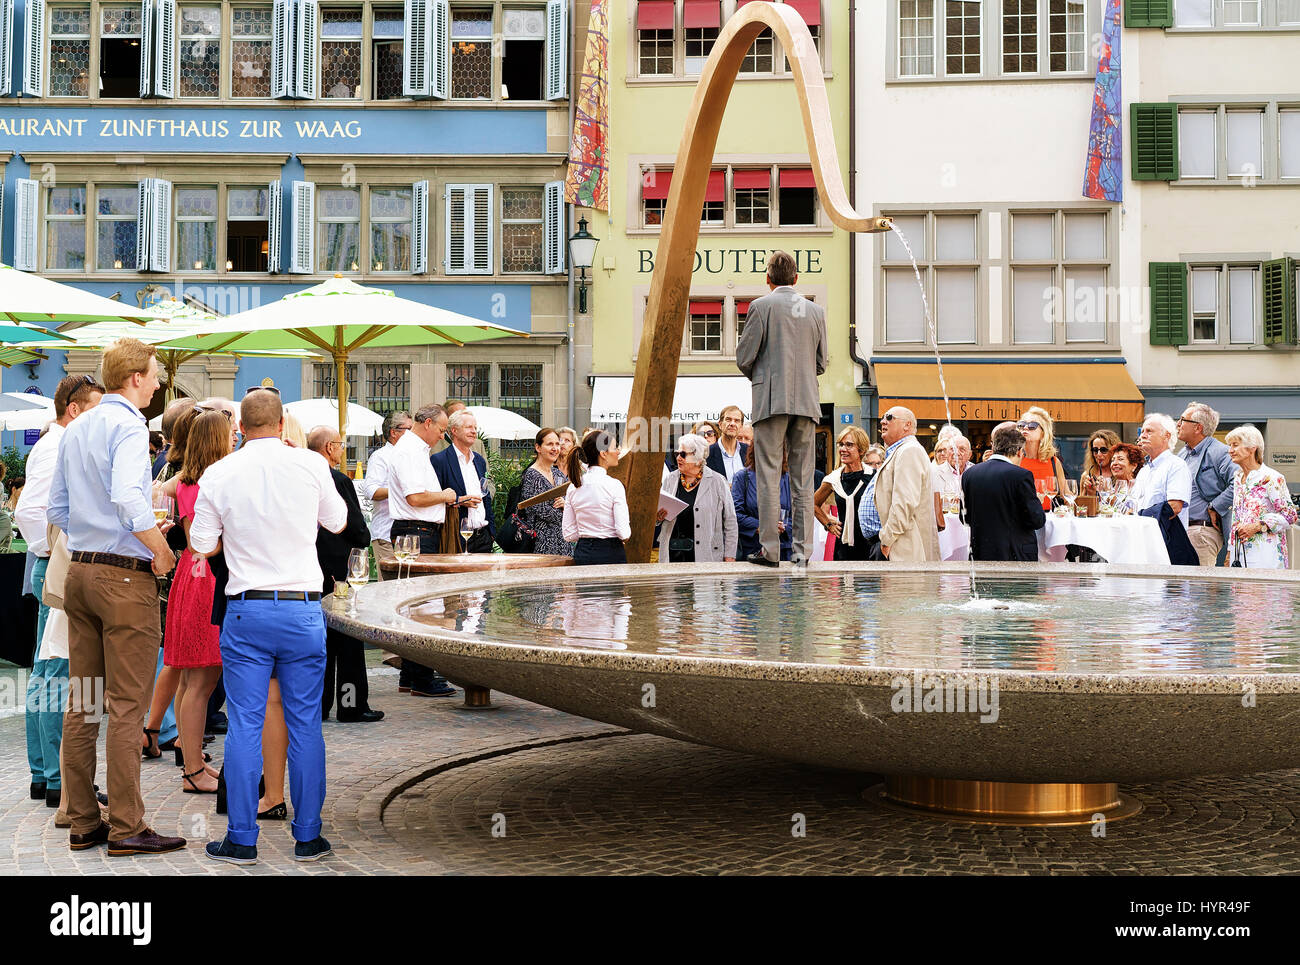 Zurich, Switzerland - September 2, 2016: People and fountain on Munsterhof square in Zurich, Switzerland Stock Photo